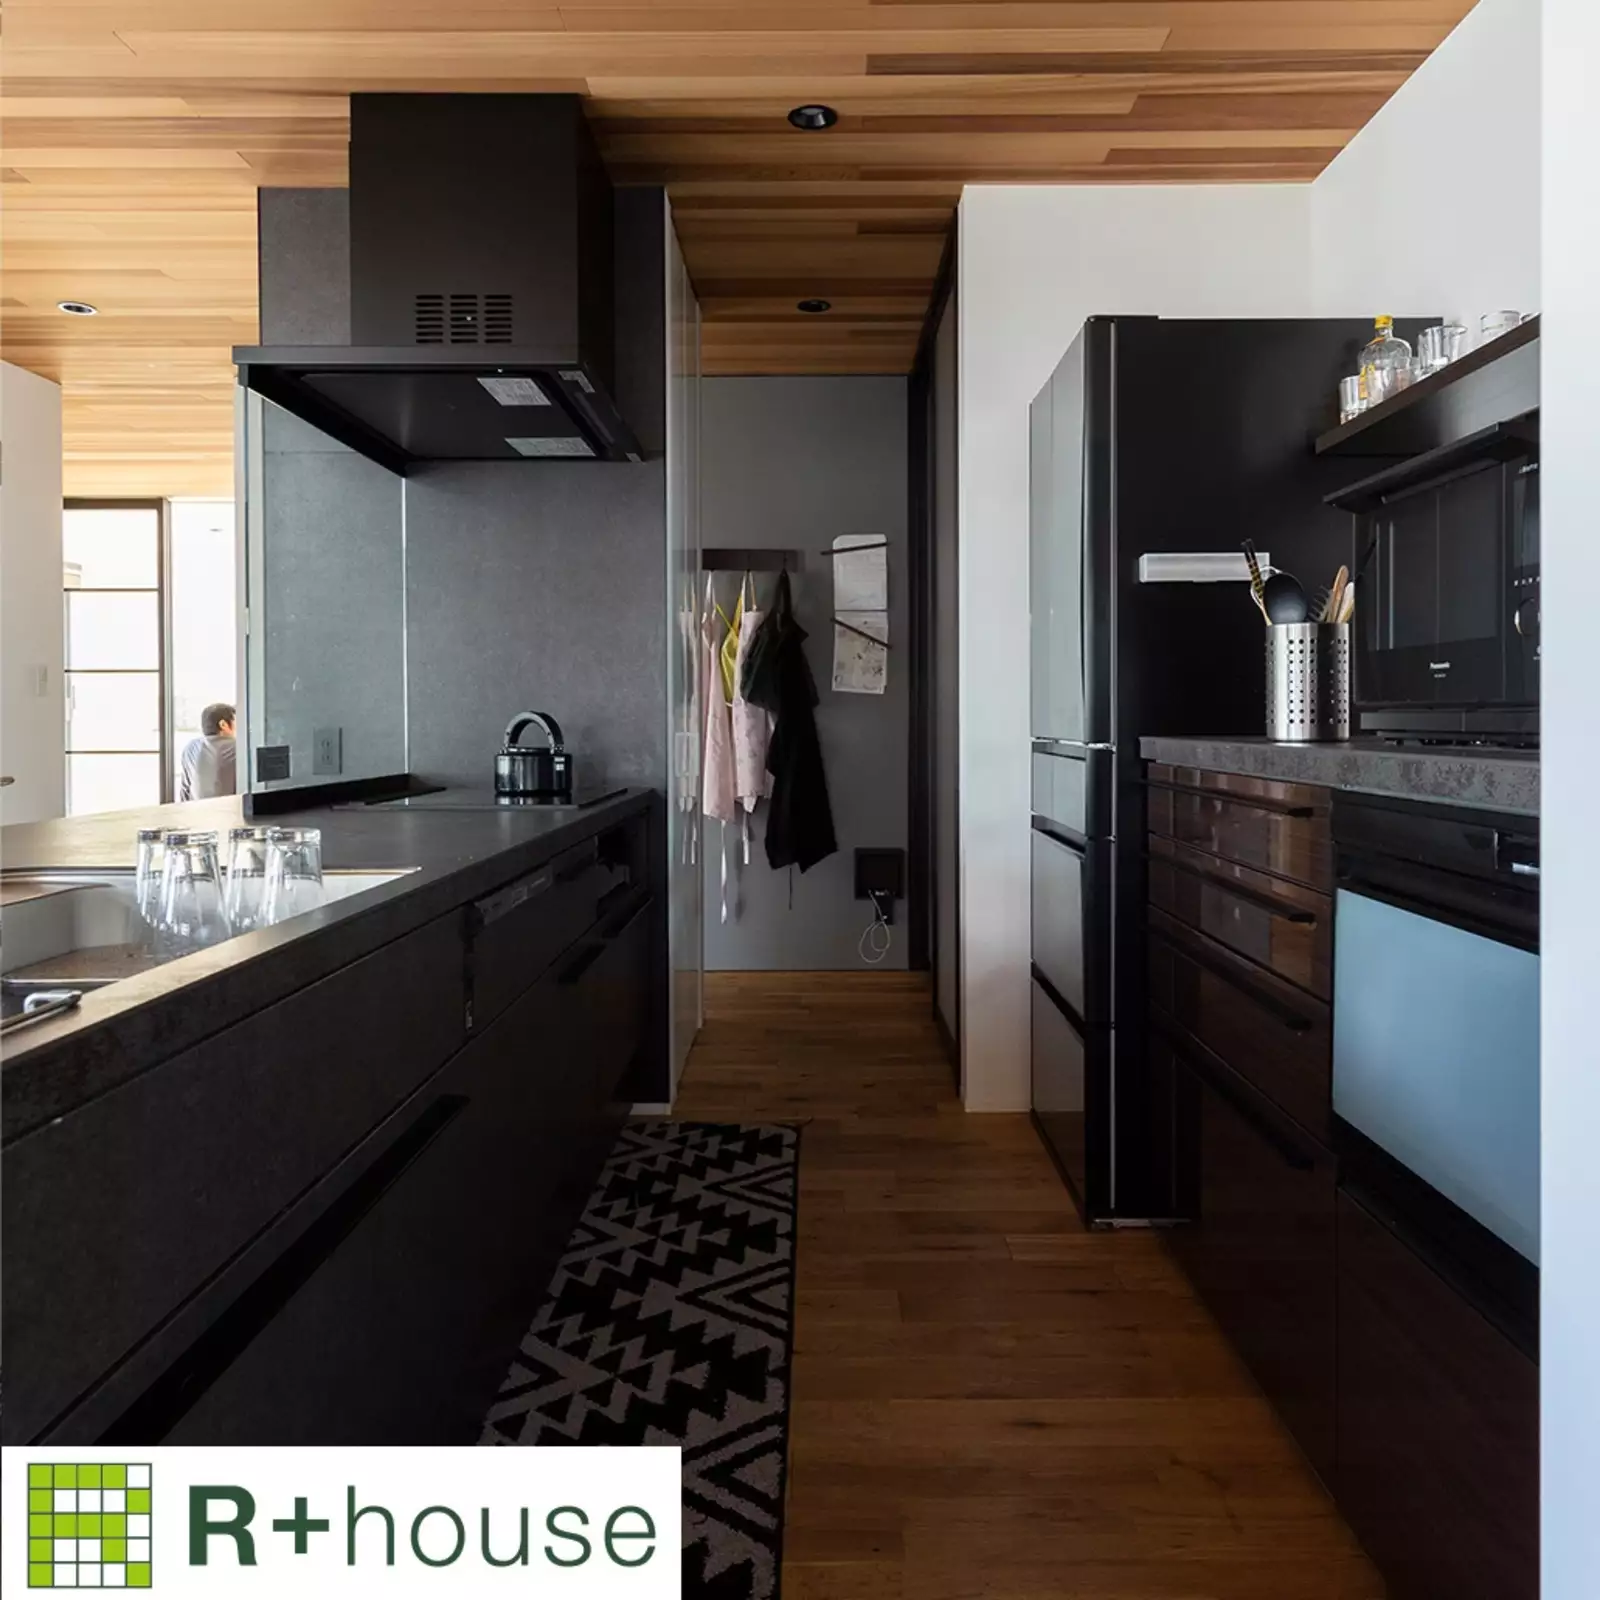 R+houseの物件のキッチンの写真です。手前にはオープンキッチン、奥にはパントリーや洗面浴室につながる